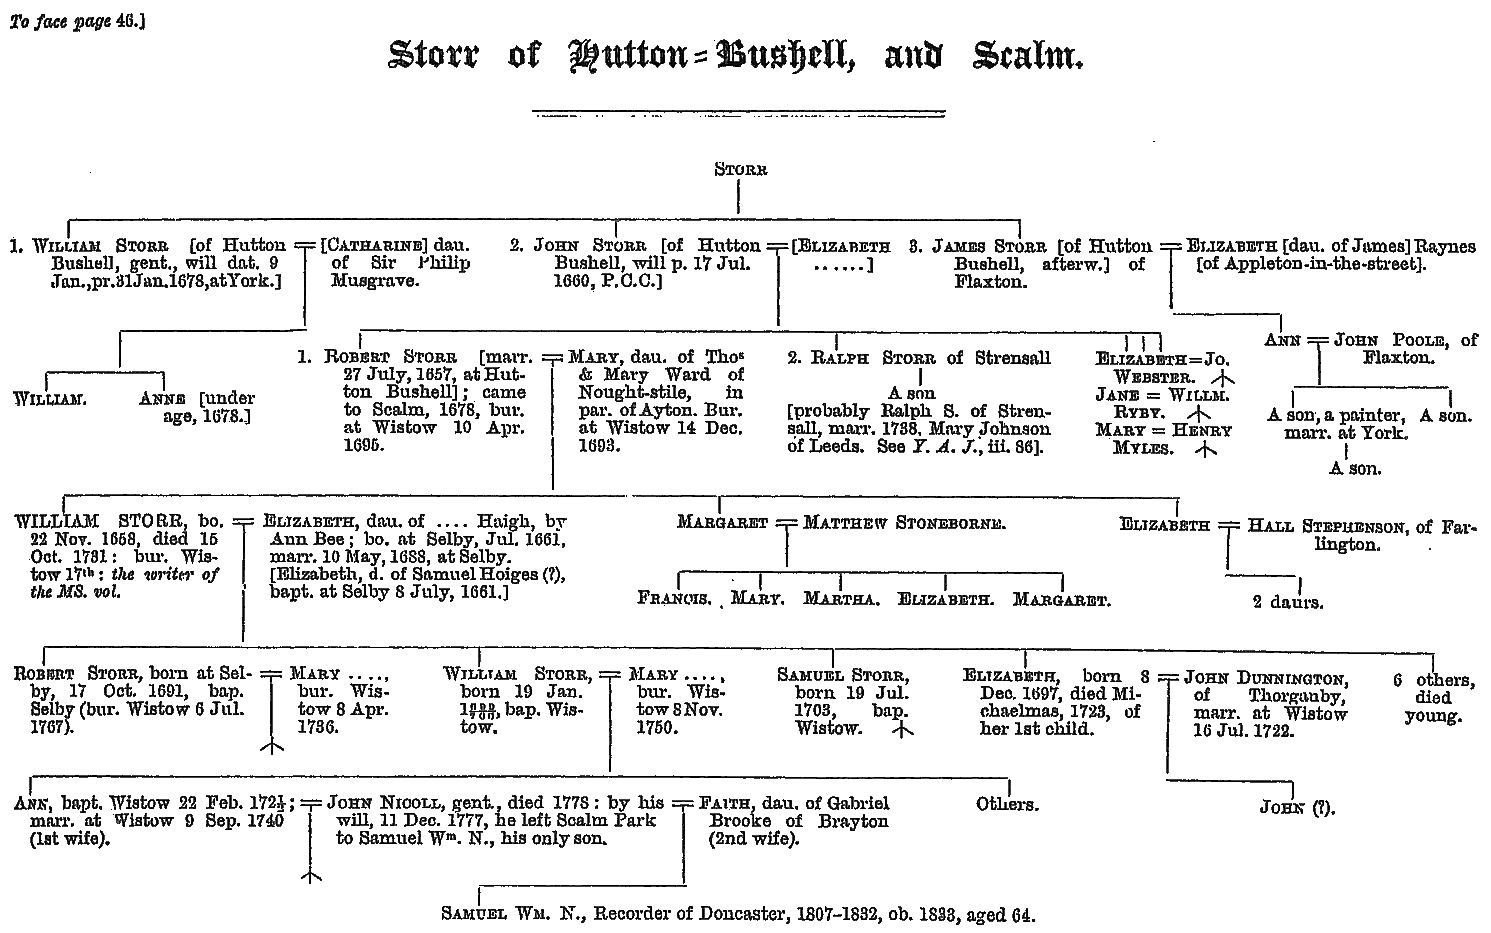 Pedigree chart for the Storr family